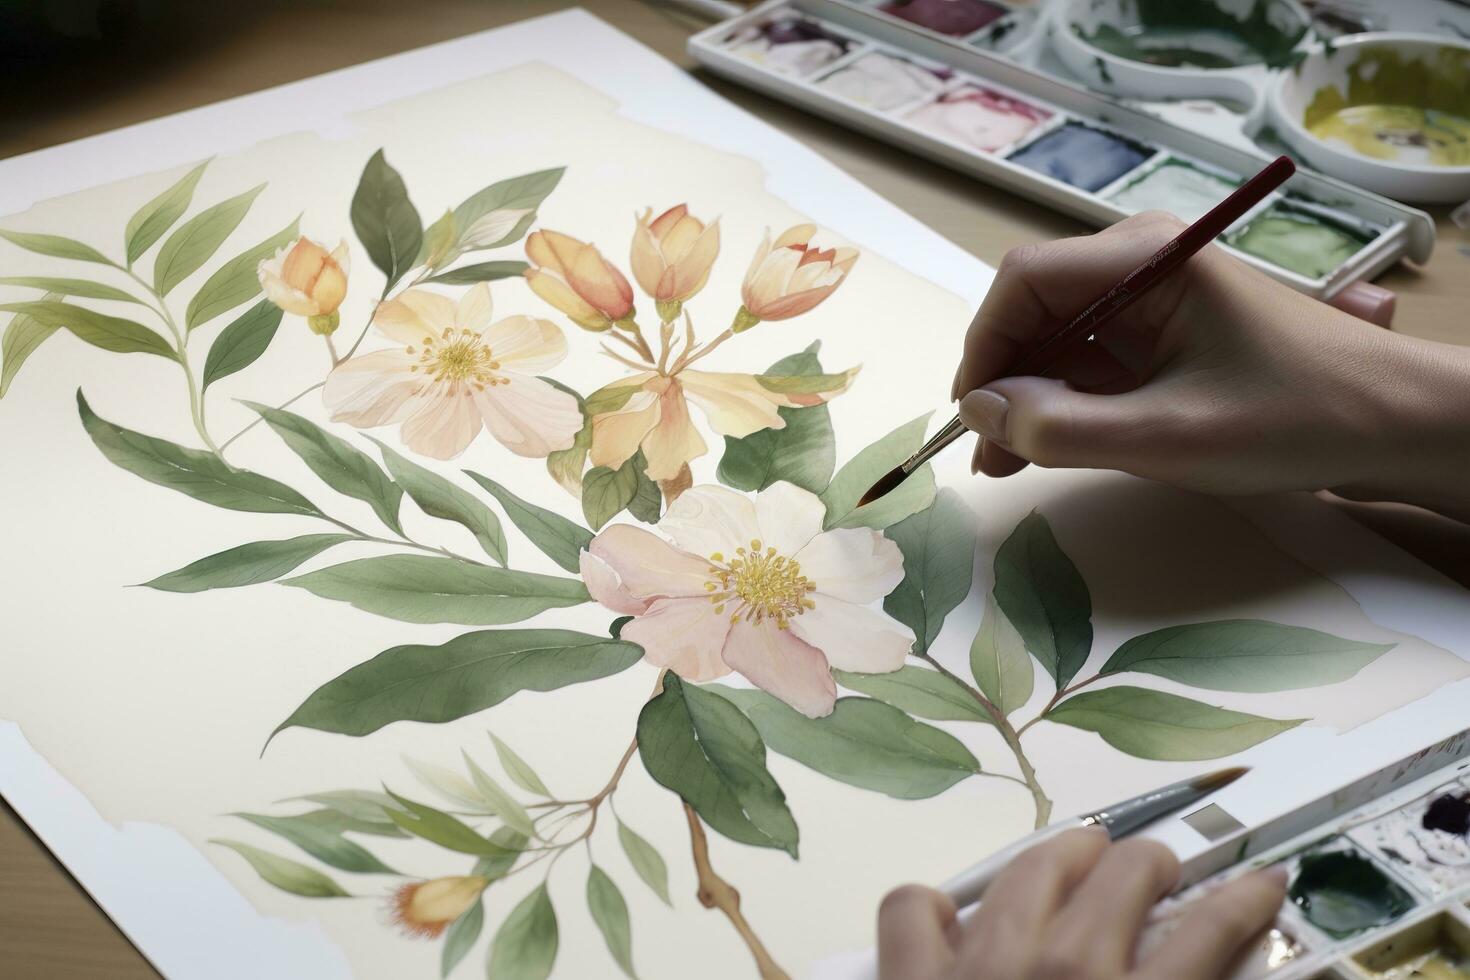 måla en serier av vattenfärg blommor i annorlunda stadier av blomning, från en tajt knopp till en fullt öppen blomma, generera ai foto